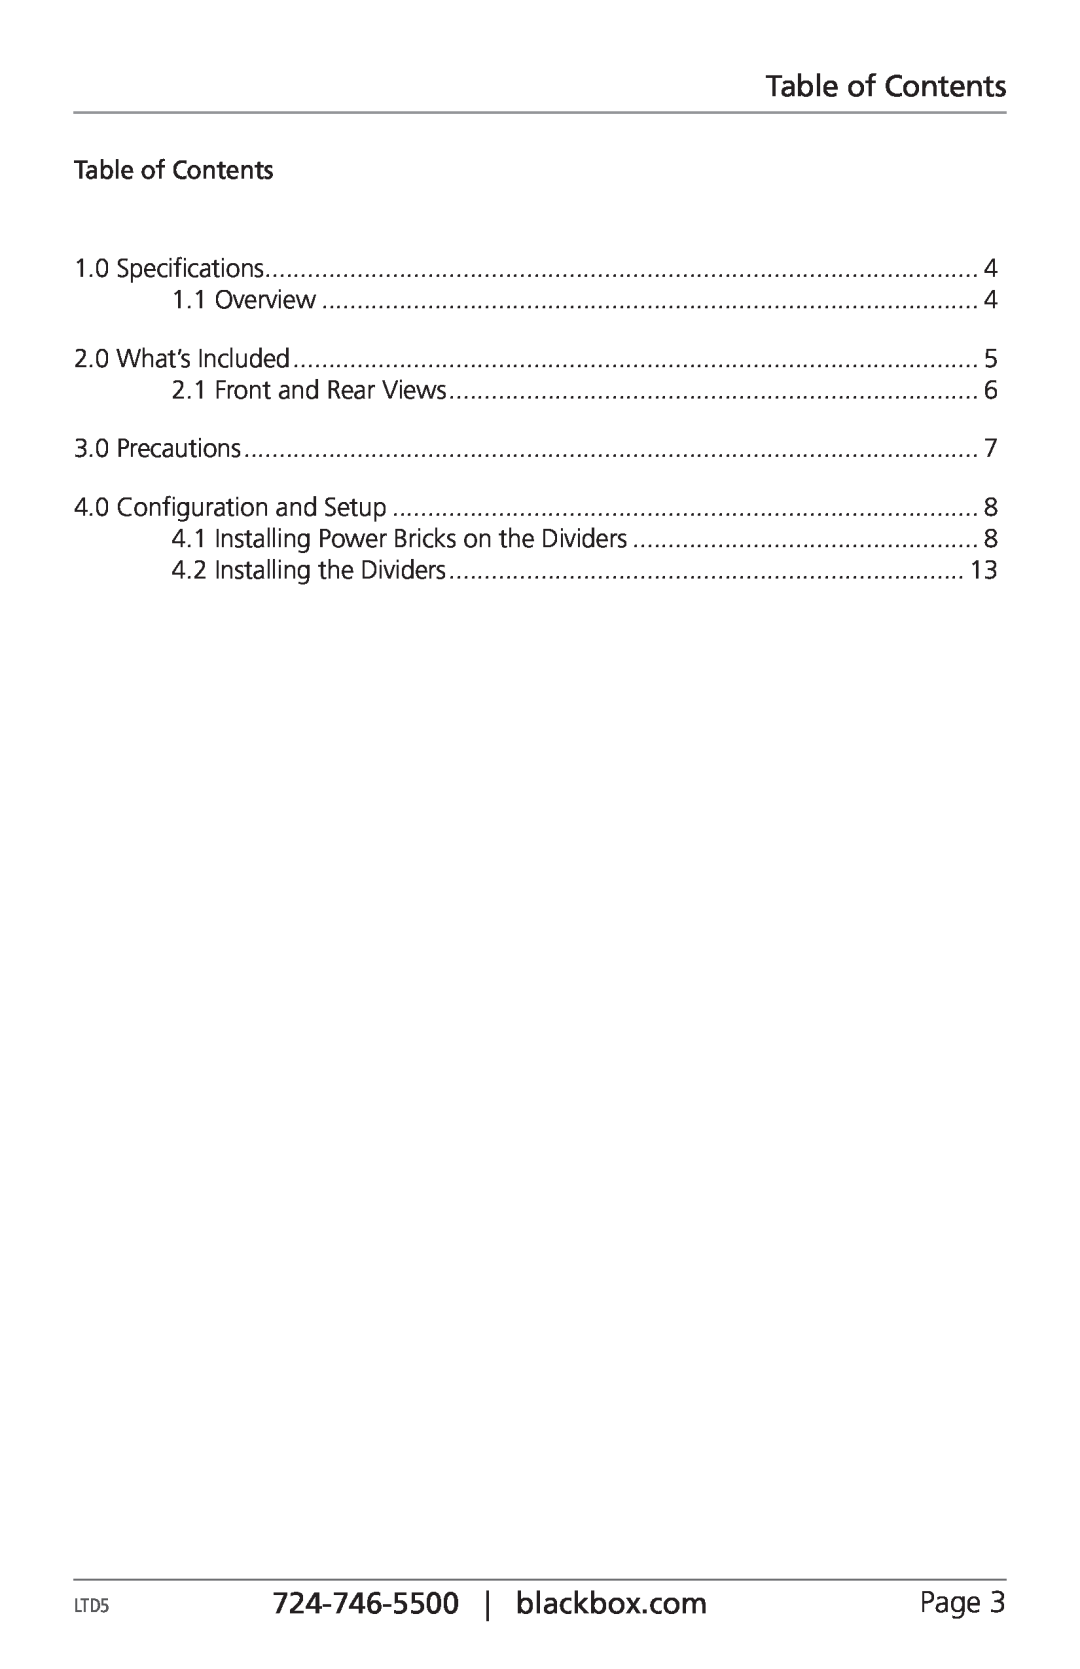 Black Box LTD5B, LTD8B manual Table of Contents, blackbox.com 